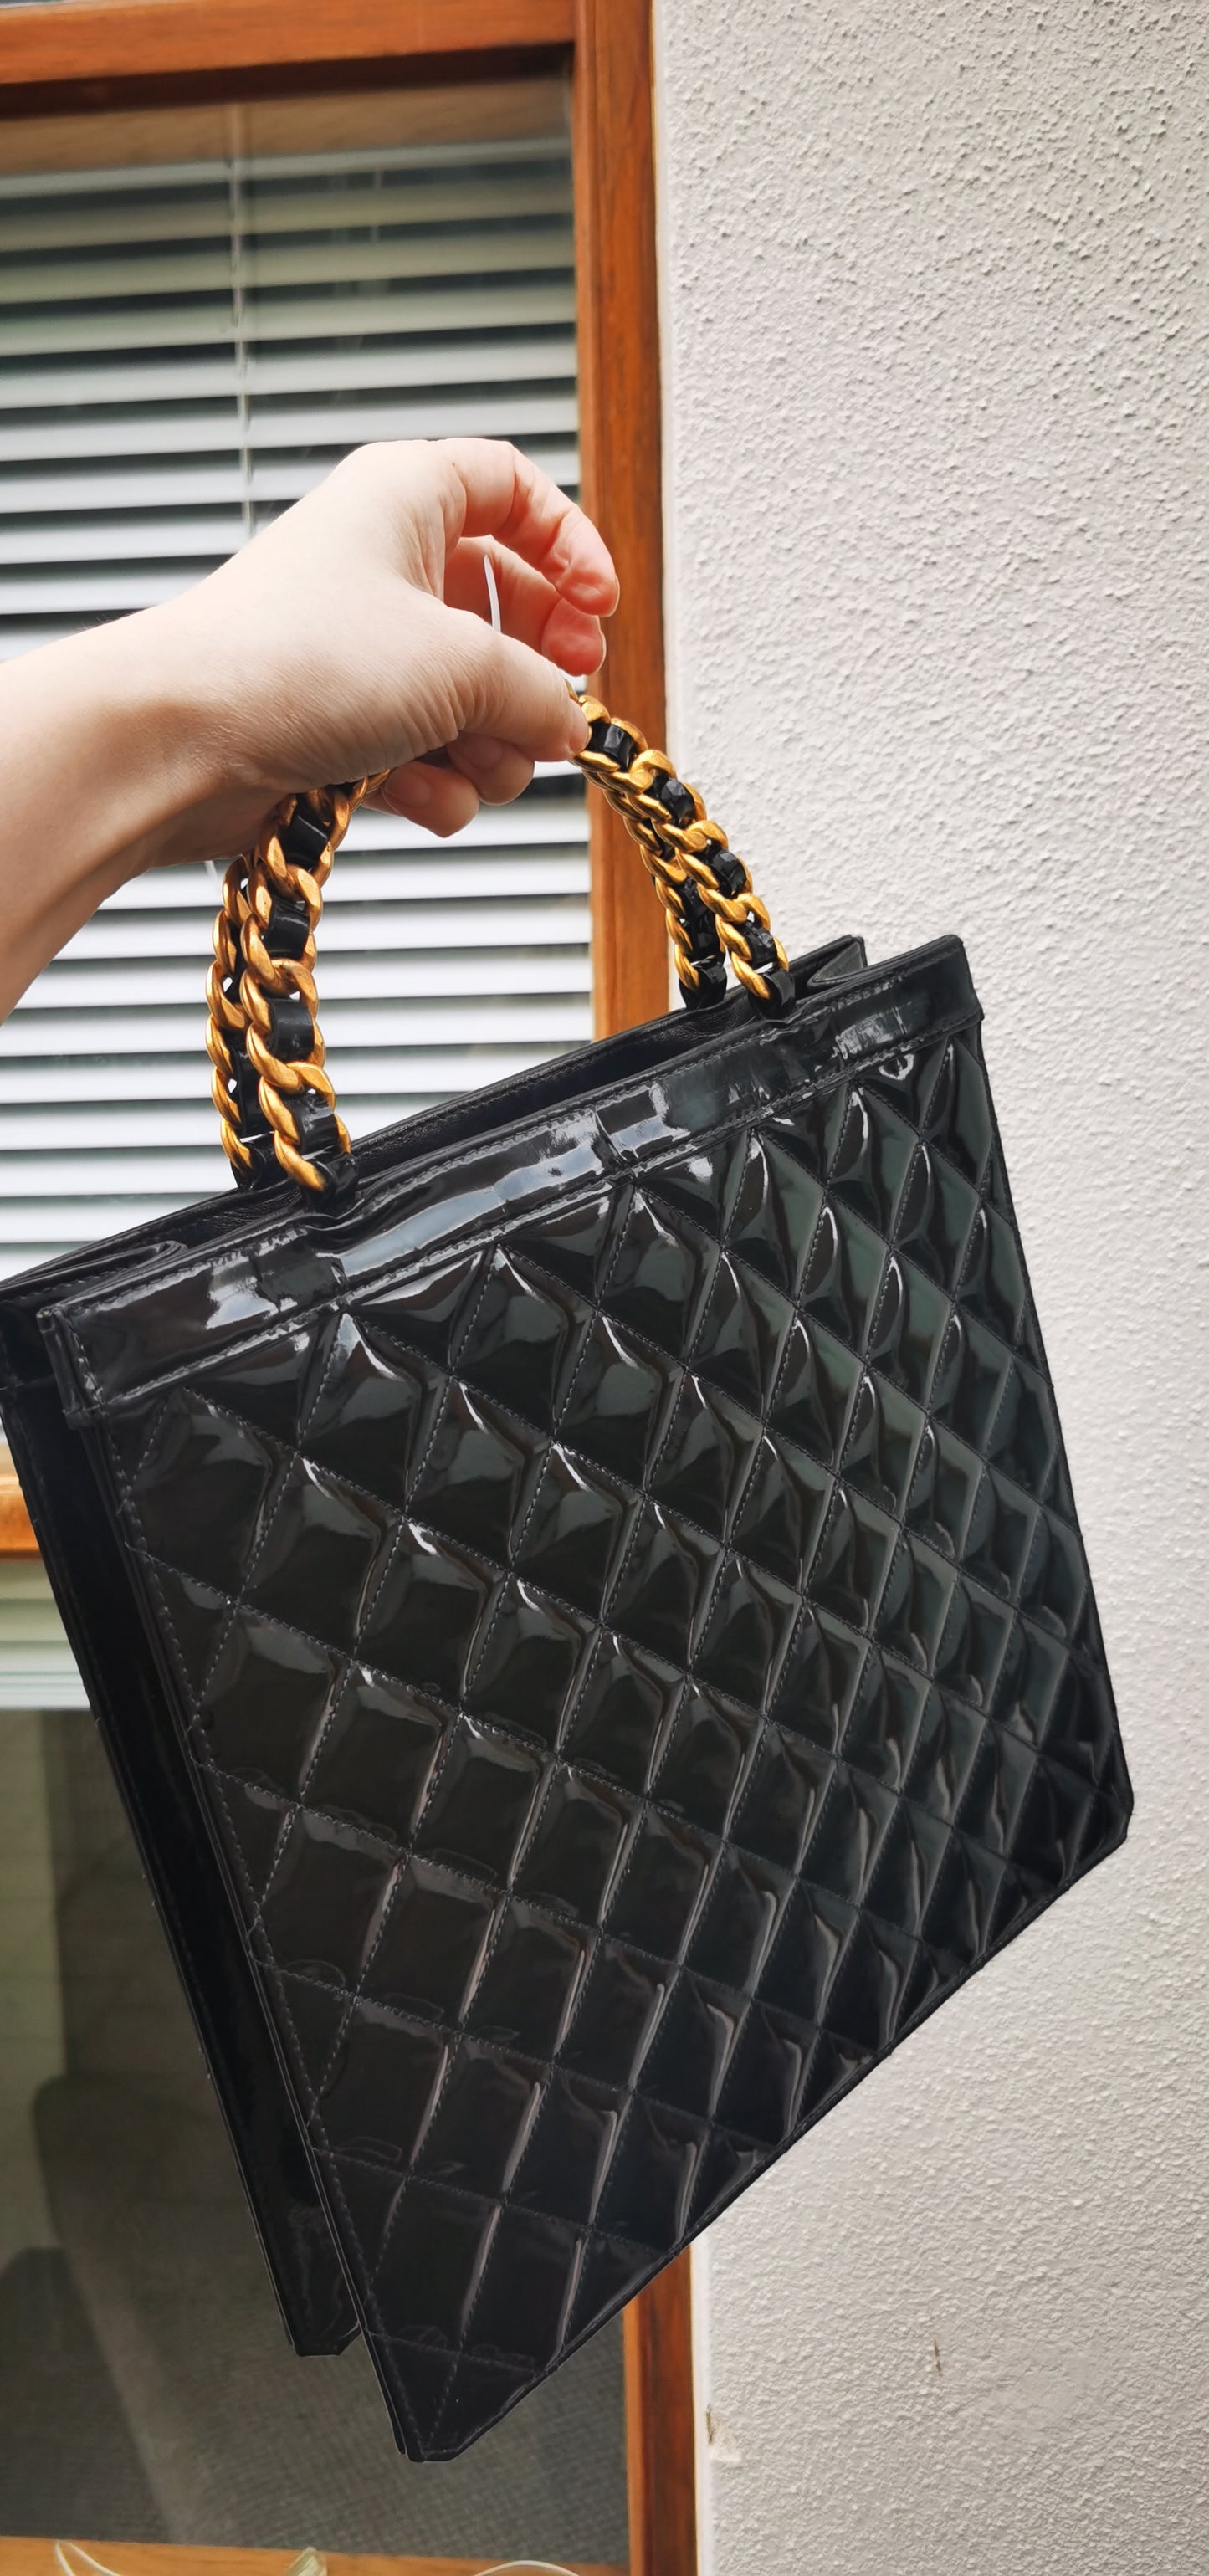 Pre-loved Chanel Vintage Patent Leather Handbag Black